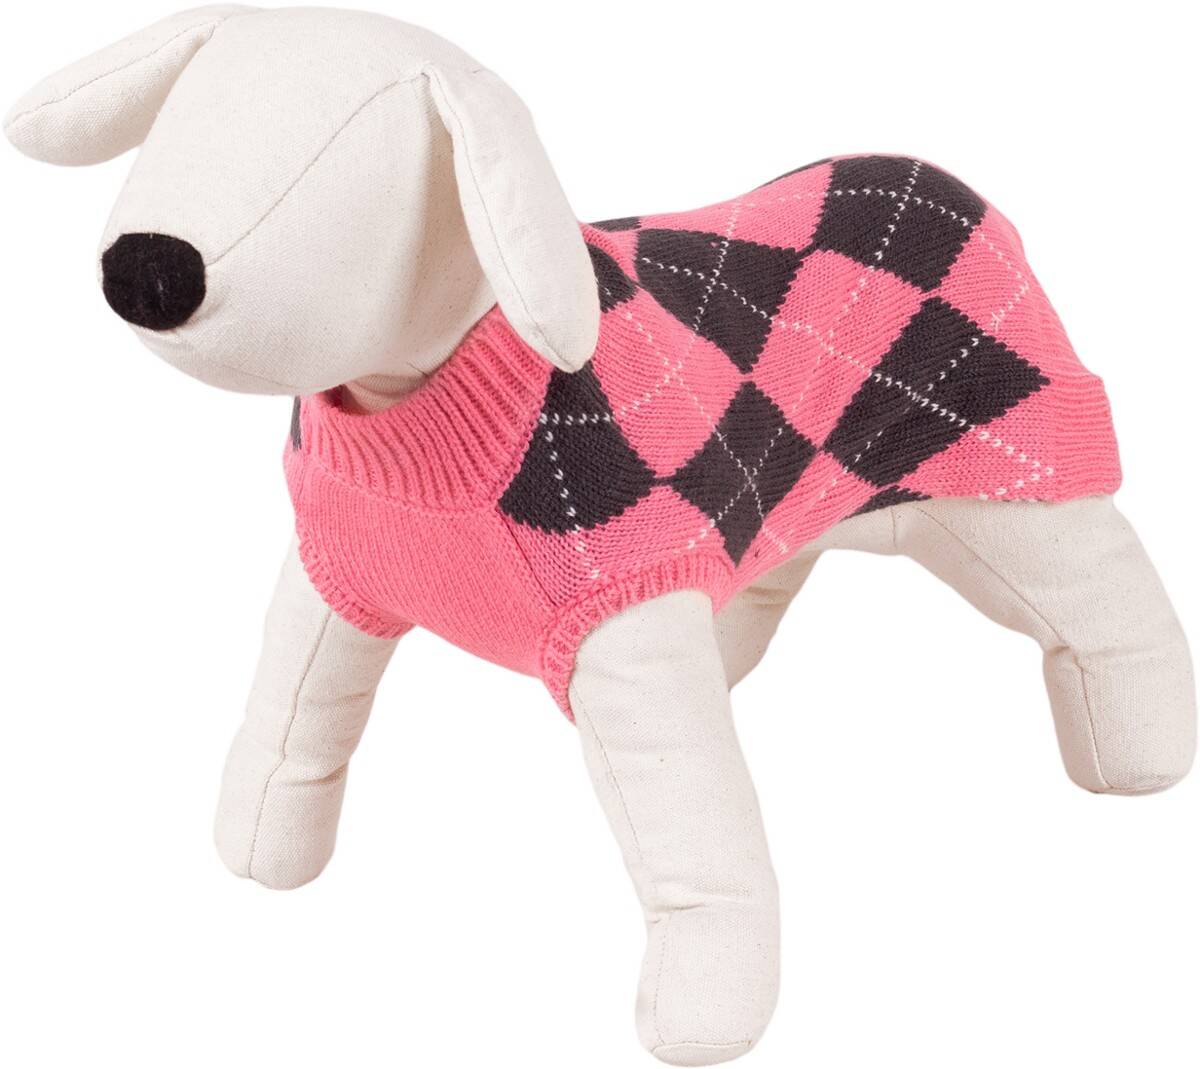 Sweterek dla psa Happet 46XL romby róż XL-40cm